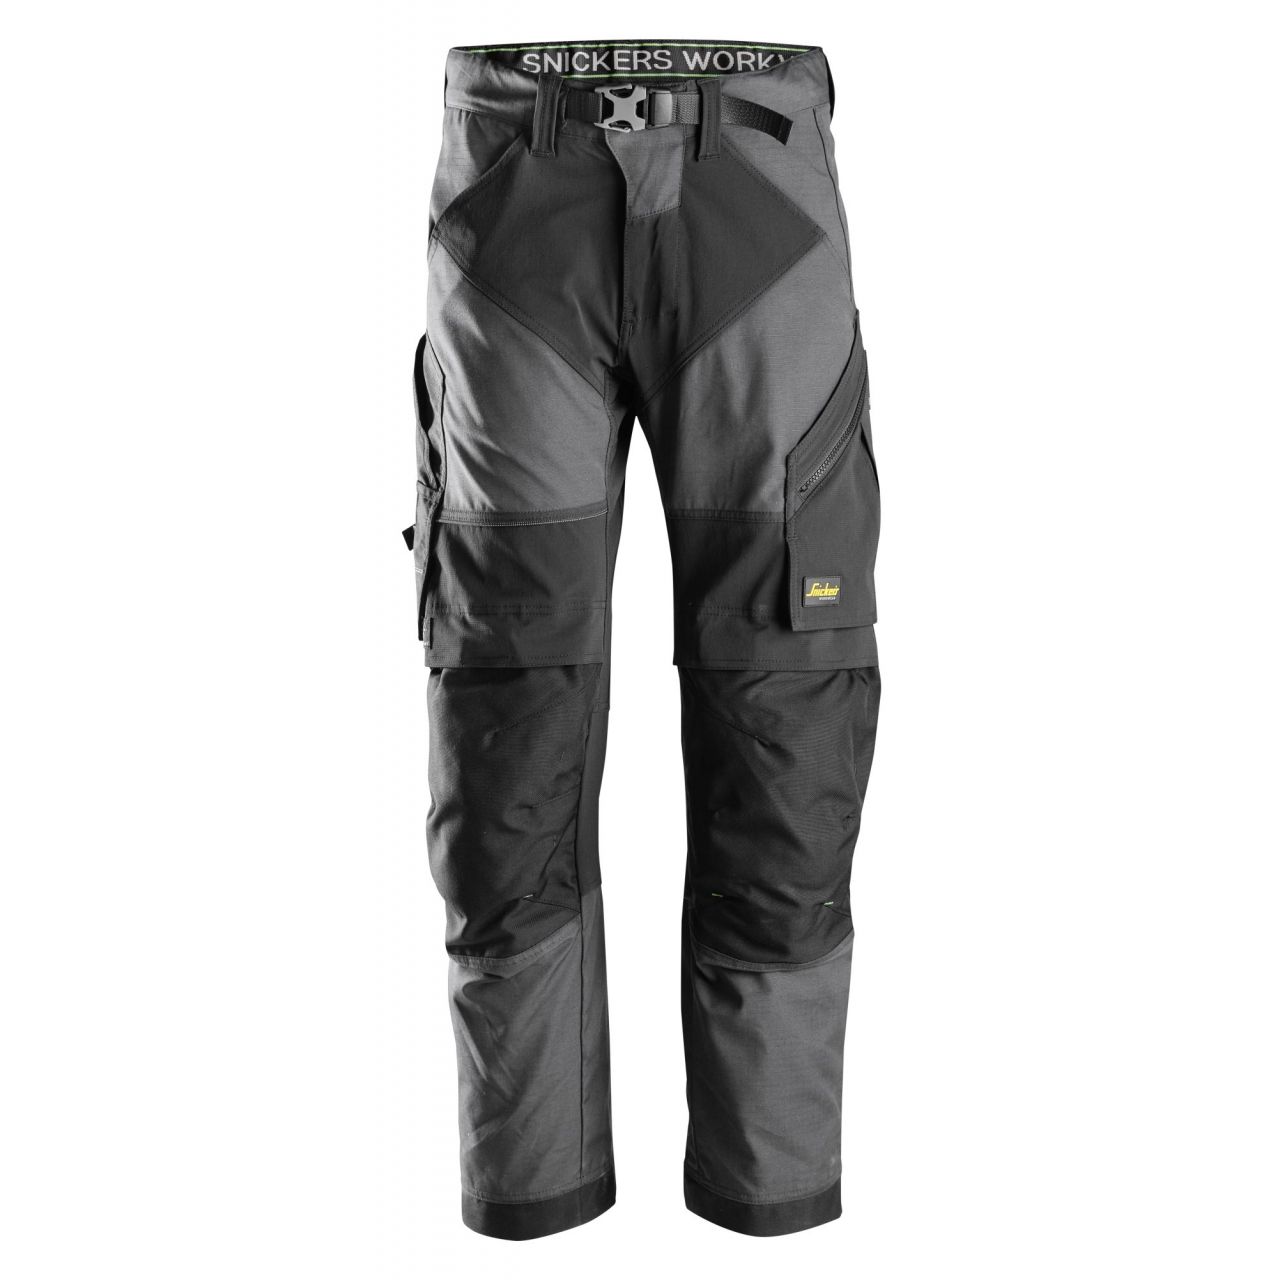 Pantalon FlexiWork+ gris acero-negro talla 158